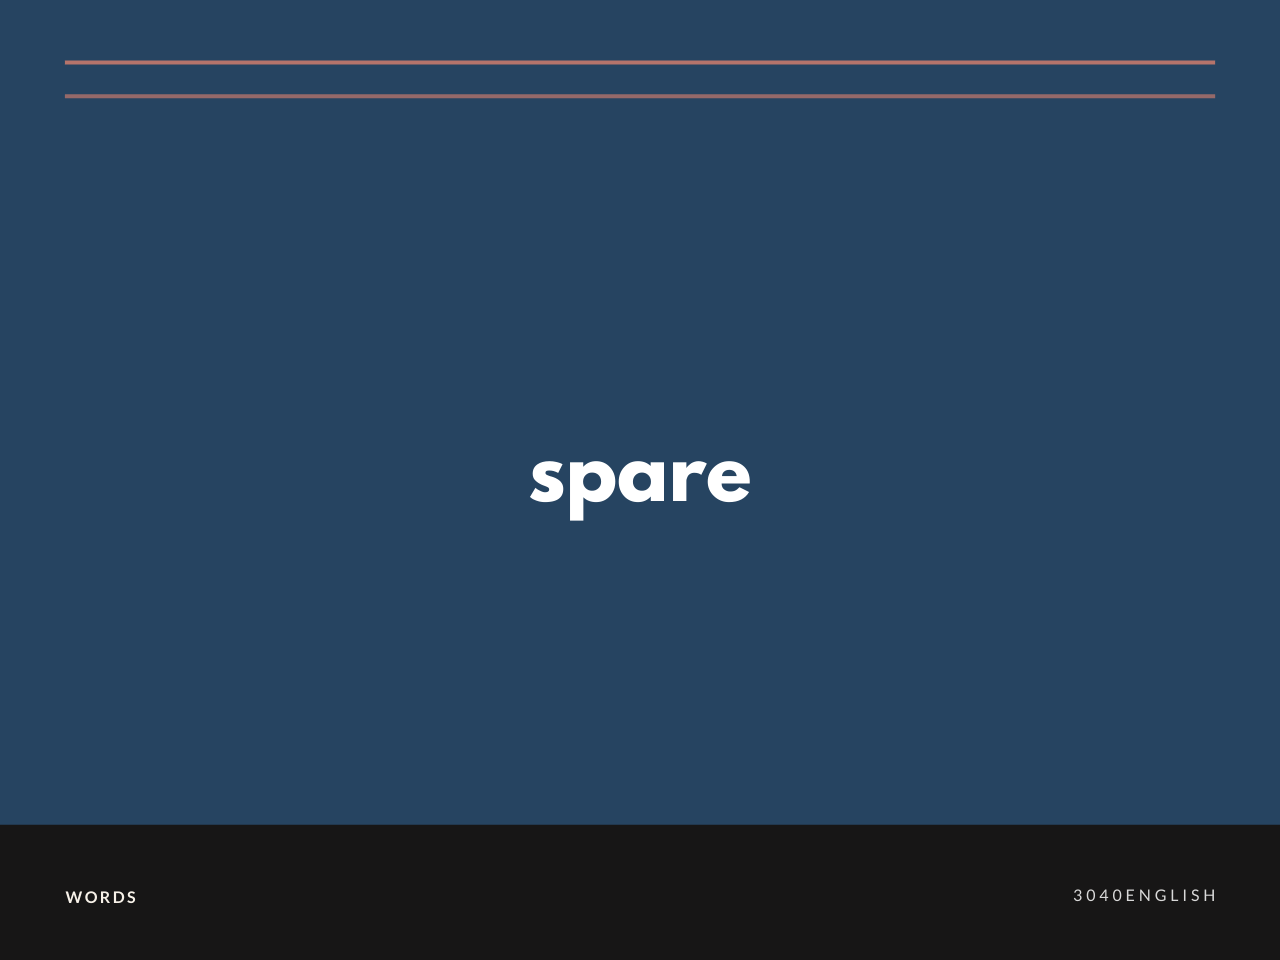 【スペア】spare の意味と簡単な使い方【英語表現・例文あり】